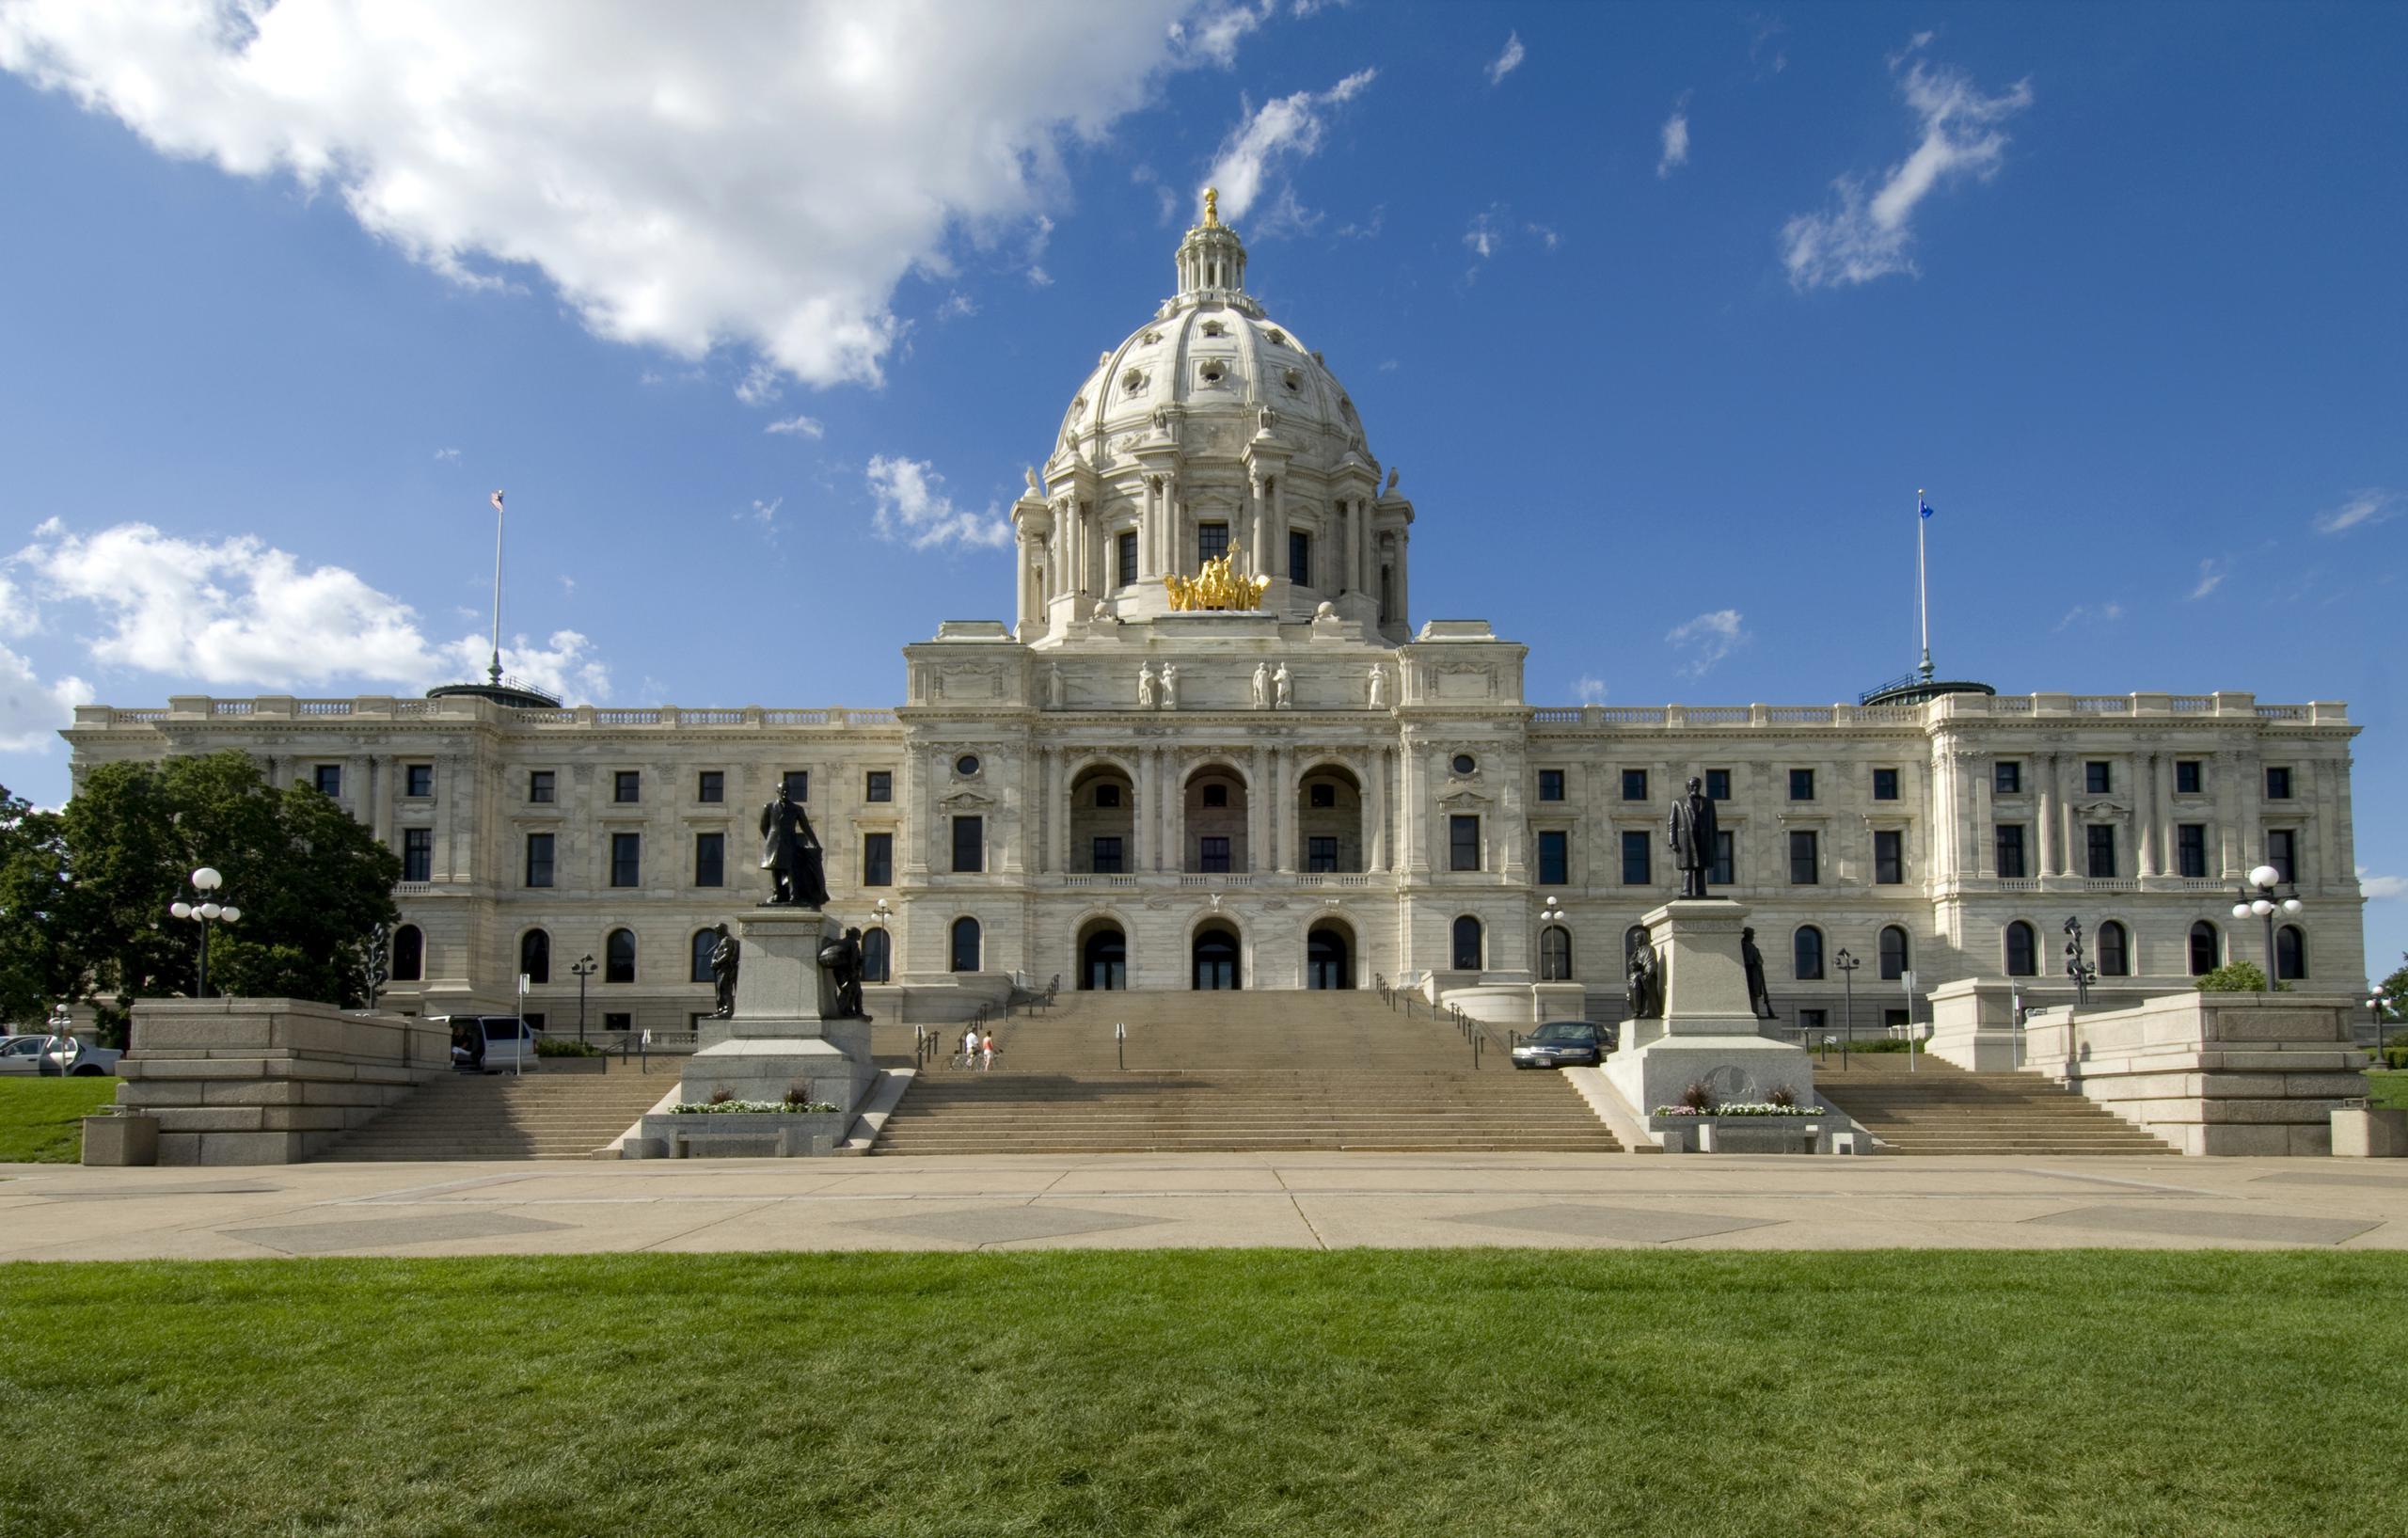 Minnesota State Capital